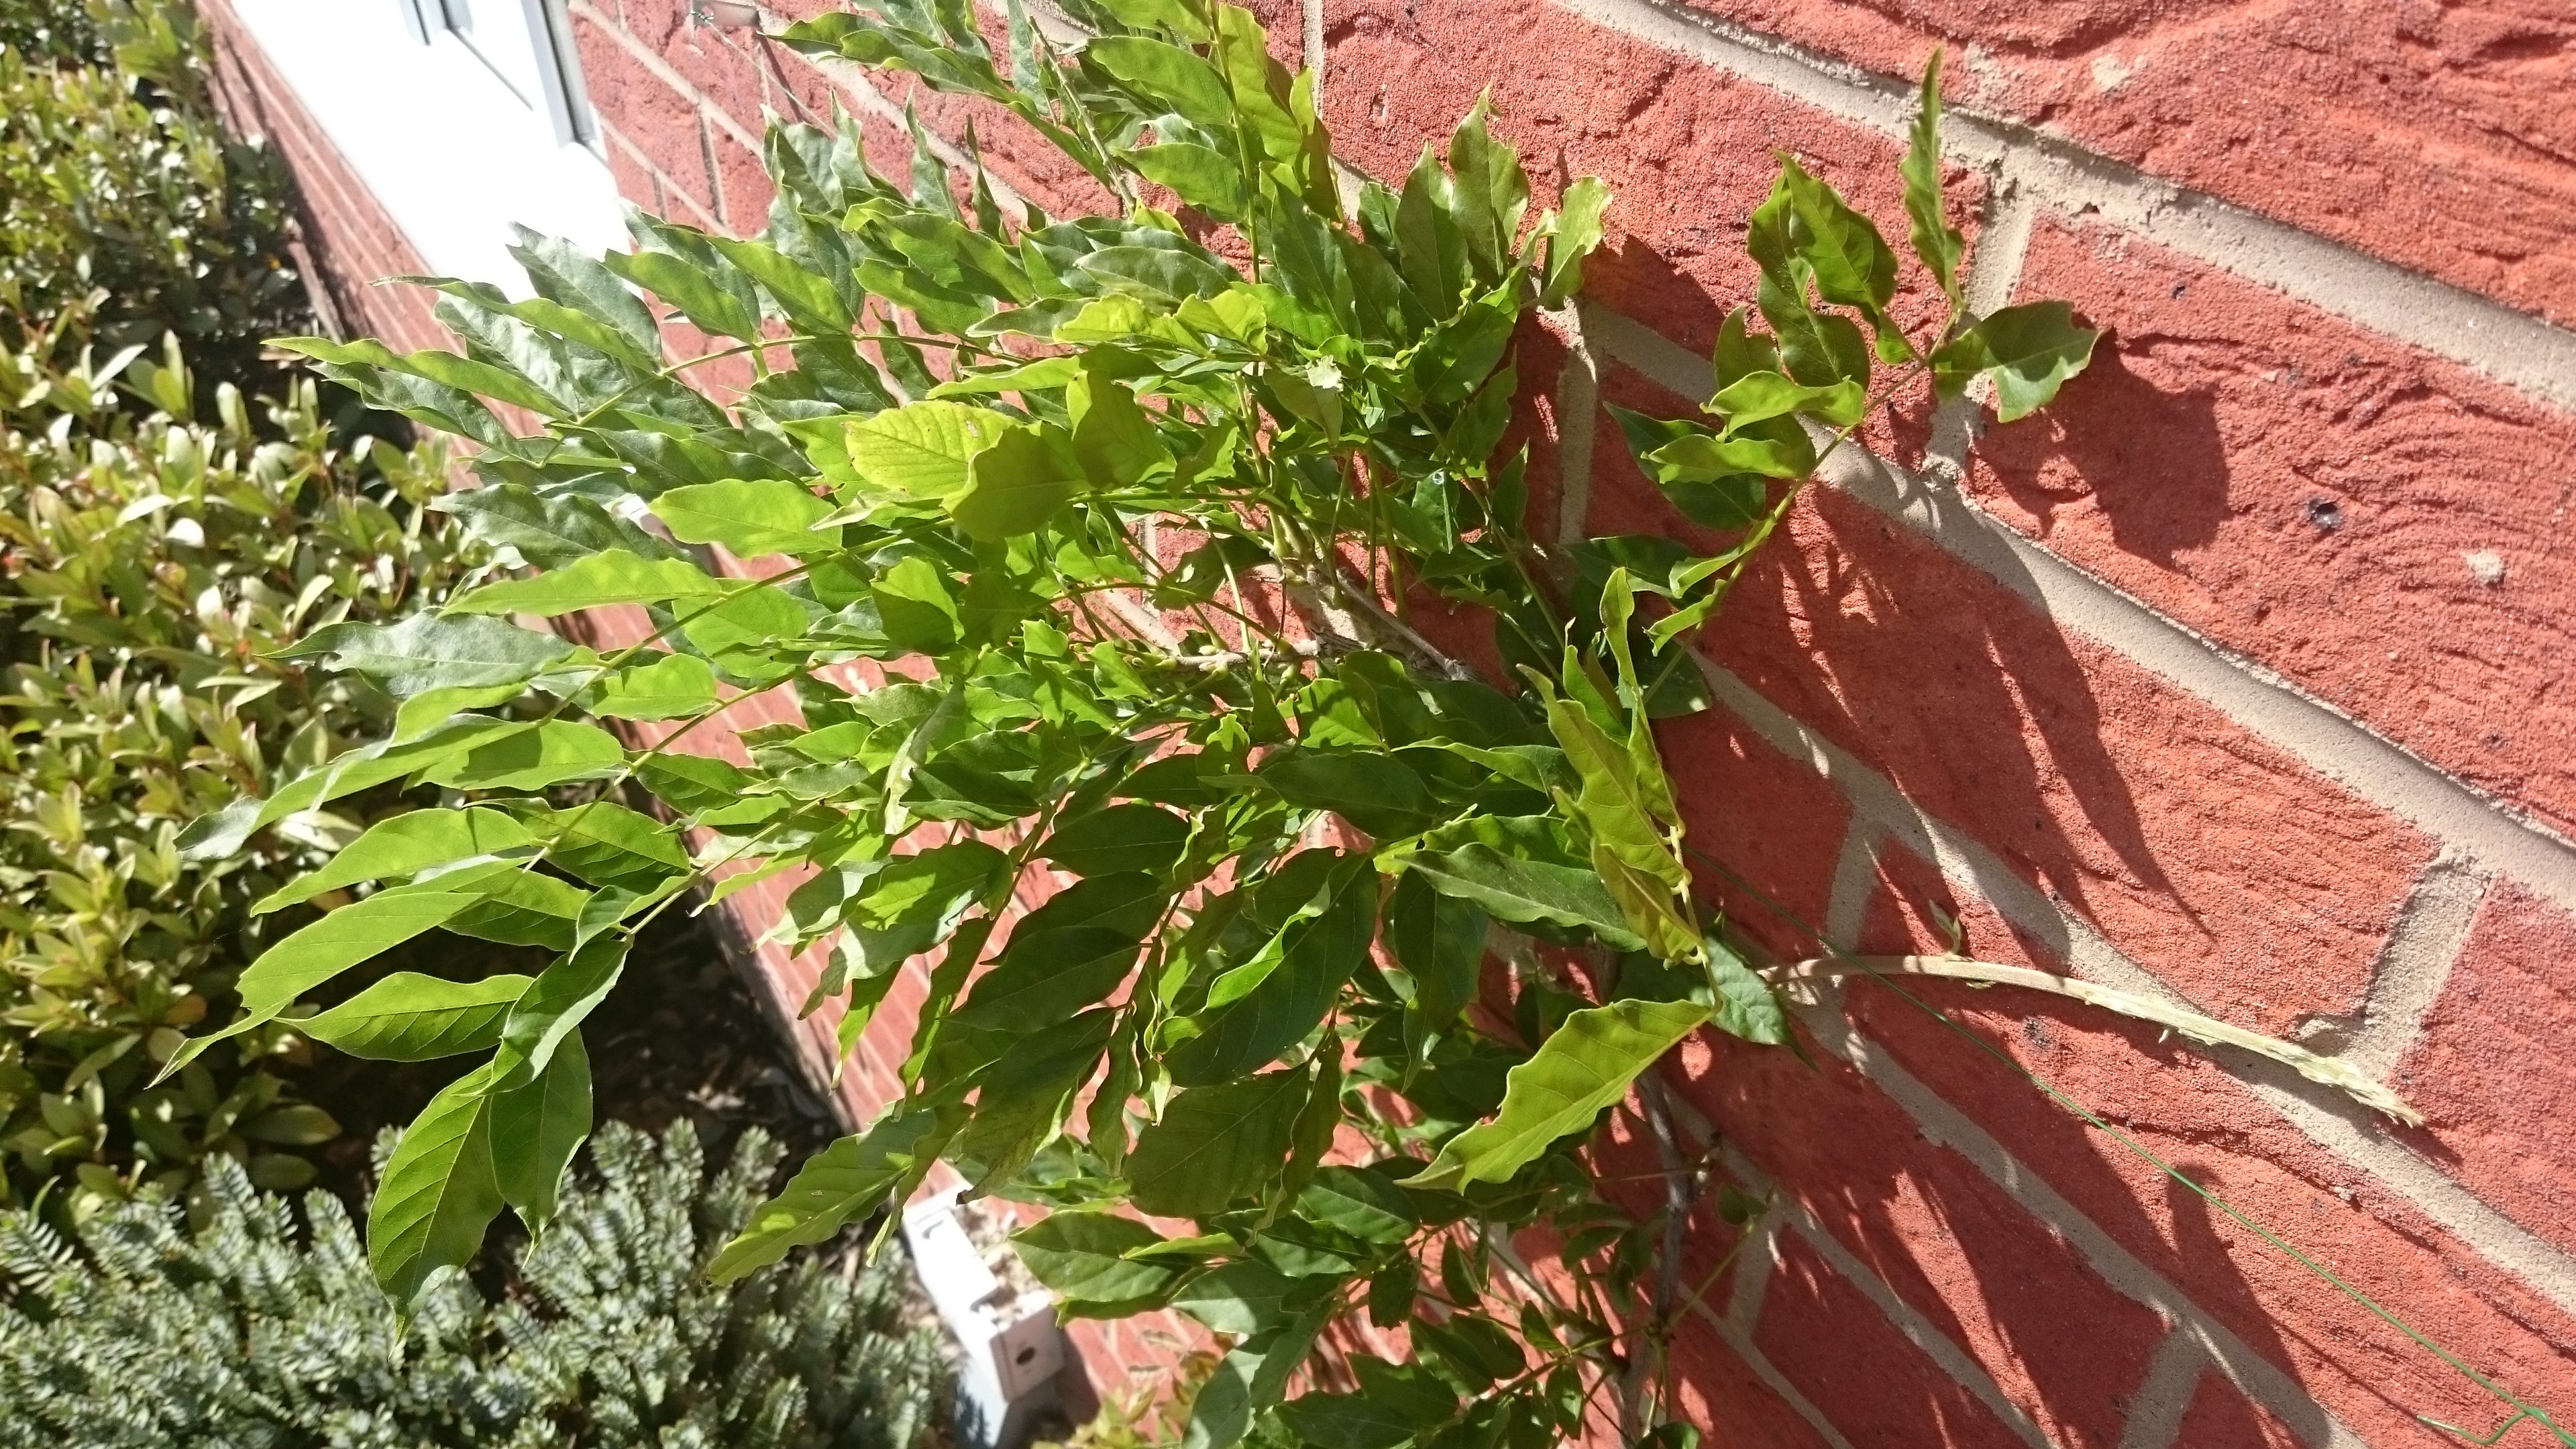 Strangled my wisteria! — Forum | gardenersworld.com